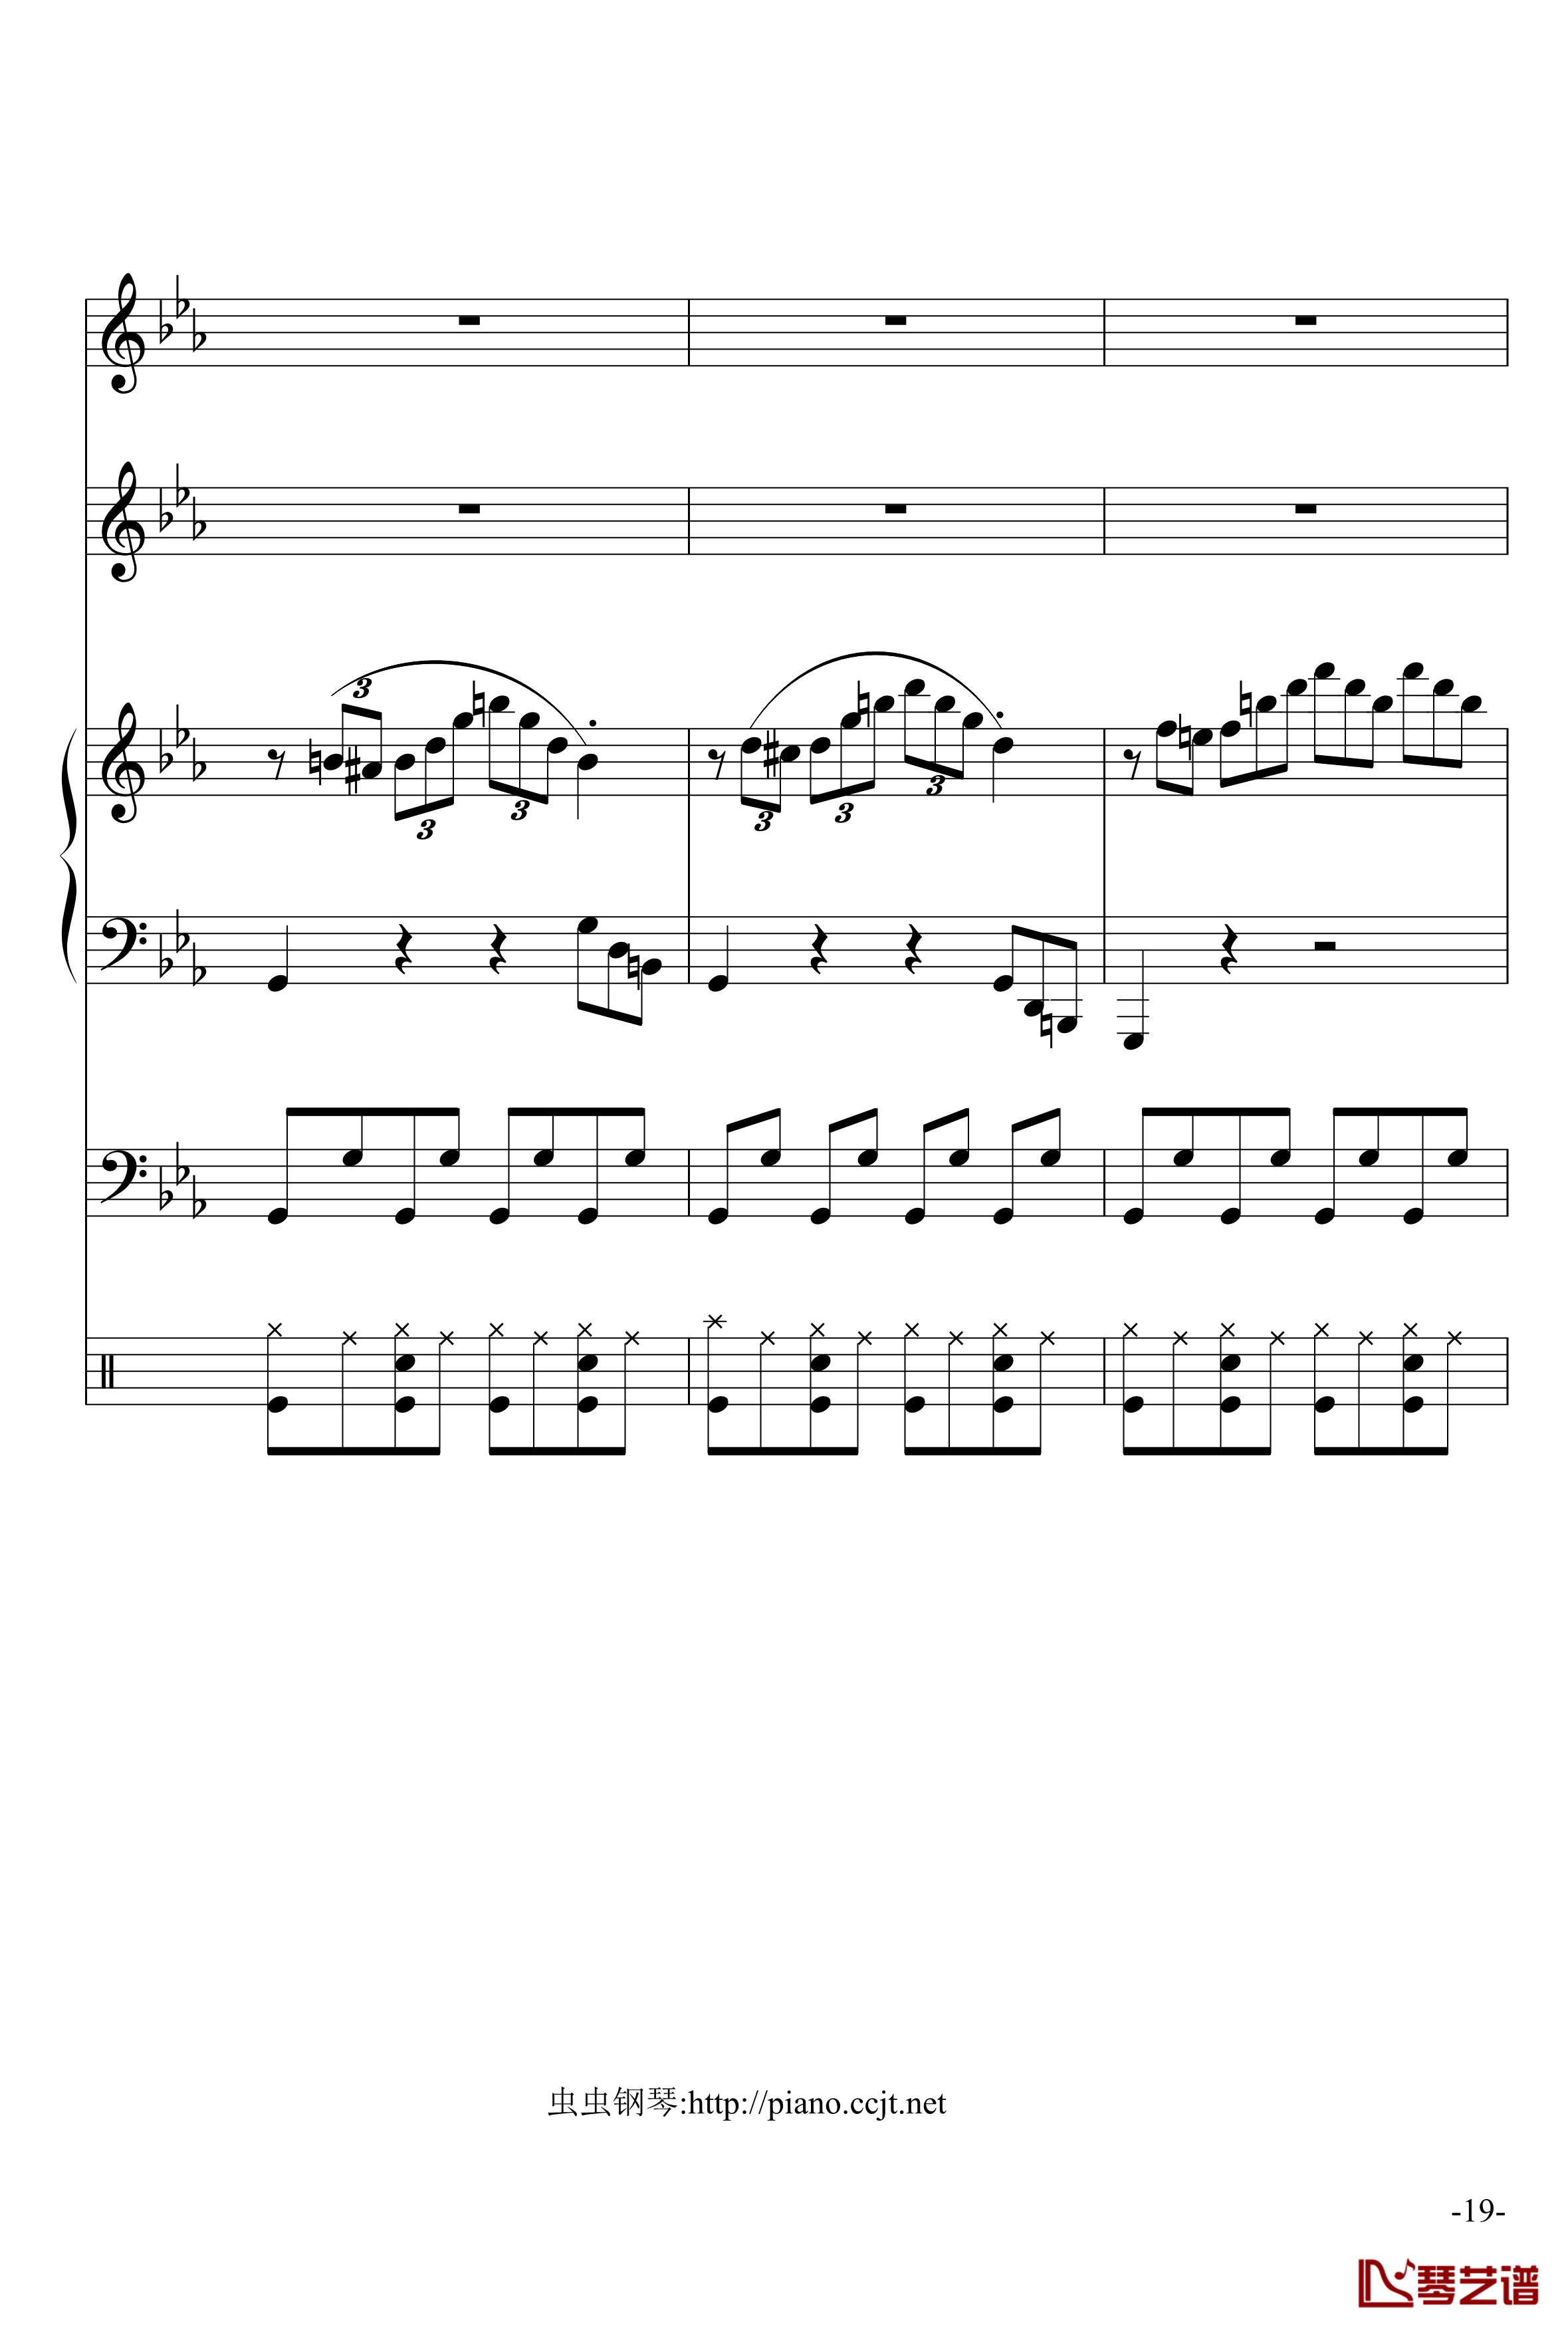 悲怆奏鸣曲钢琴谱-加小乐队-贝多芬-beethoven19